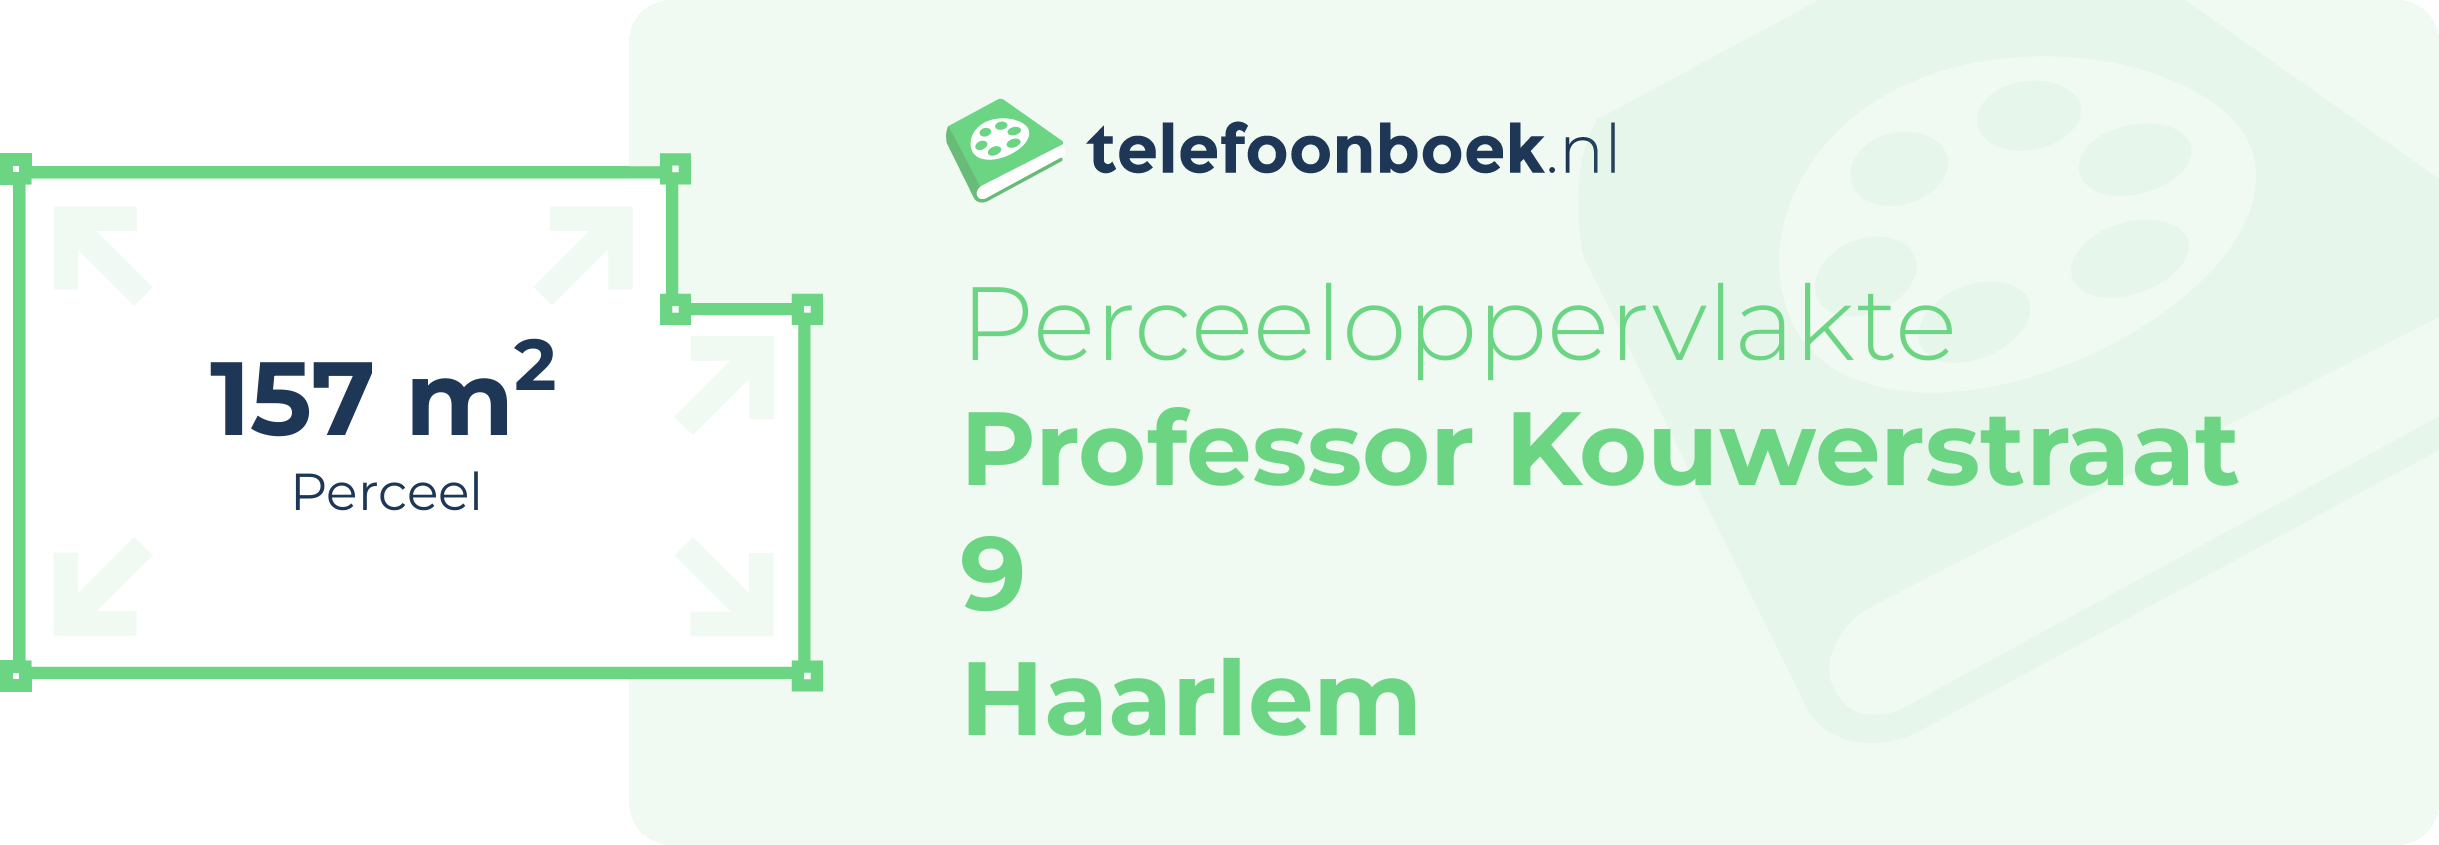 Perceeloppervlakte Professor Kouwerstraat 9 Haarlem